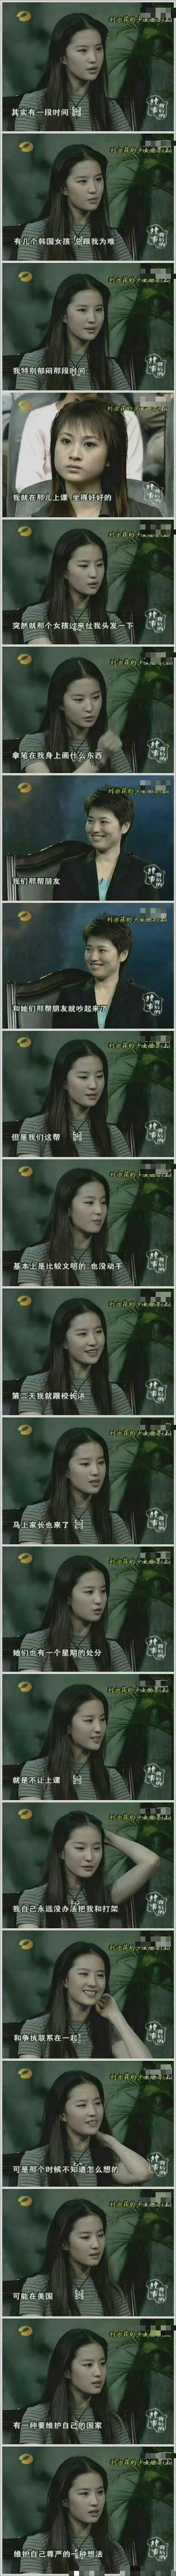 刘亦菲曾自曝被韩国女生霸凌：会揪头发或在背上乱画 - 2